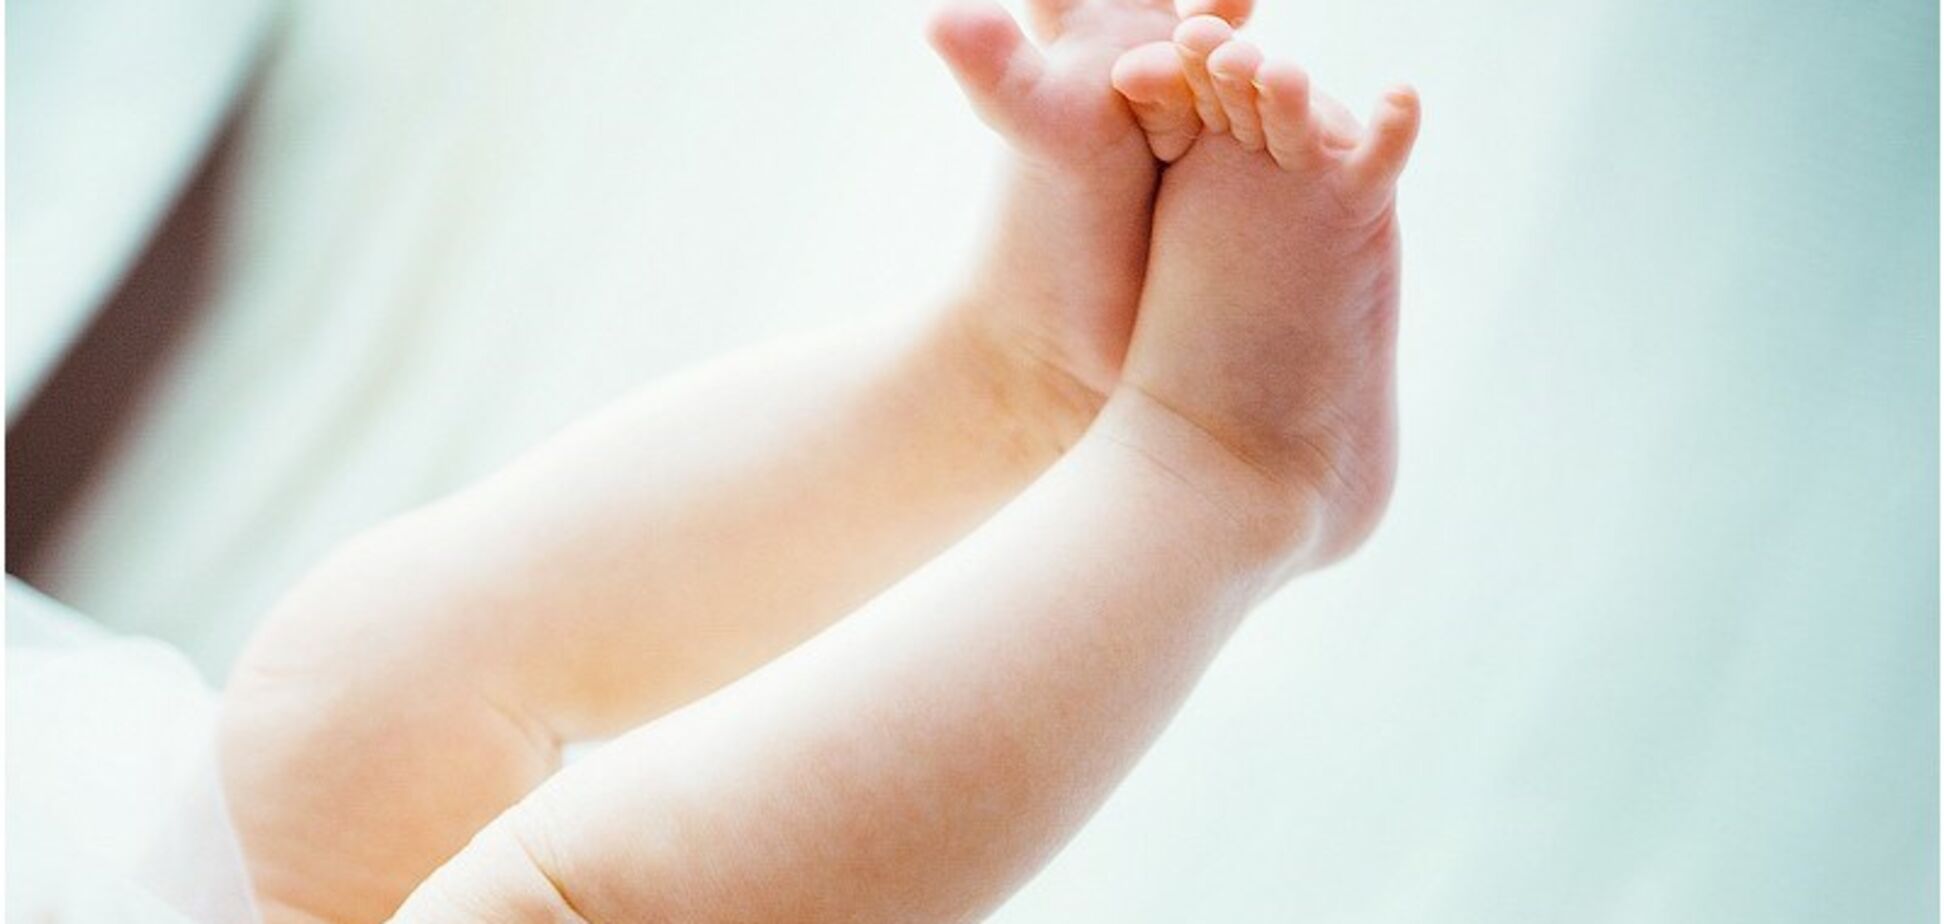 Світ вразила трагічна історія немовляти, якого прозвали 'Чужим'